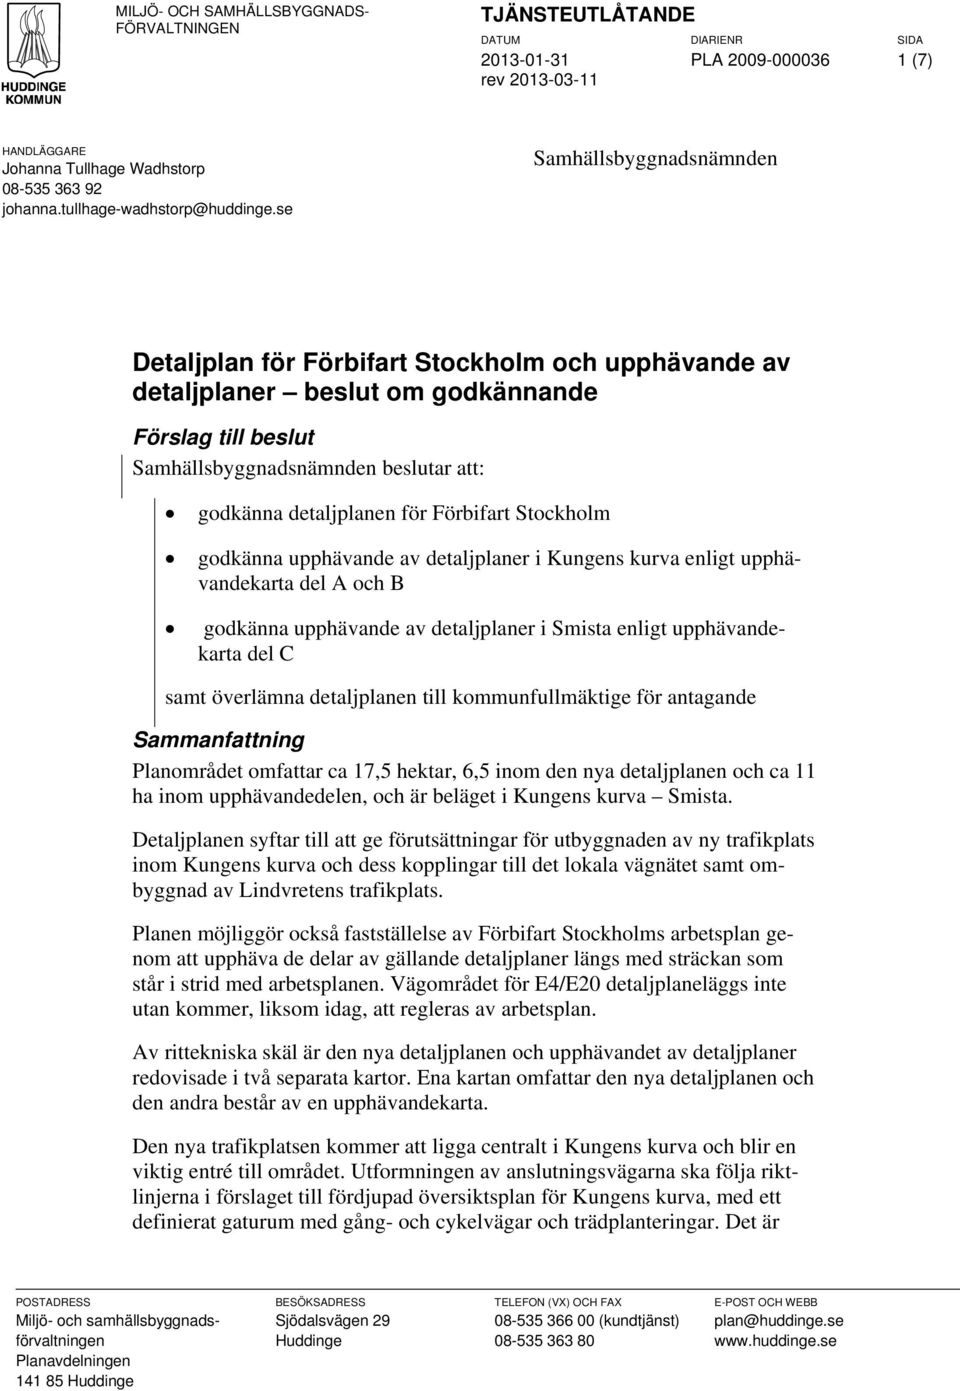 Förbifart Stockholm godkänna upphävande av detaljplaner i Kungens kurva enligt upphävandekarta del A och B godkänna upphävande av detaljplaner i Smista enligt upphävandekarta del C samt överlämna